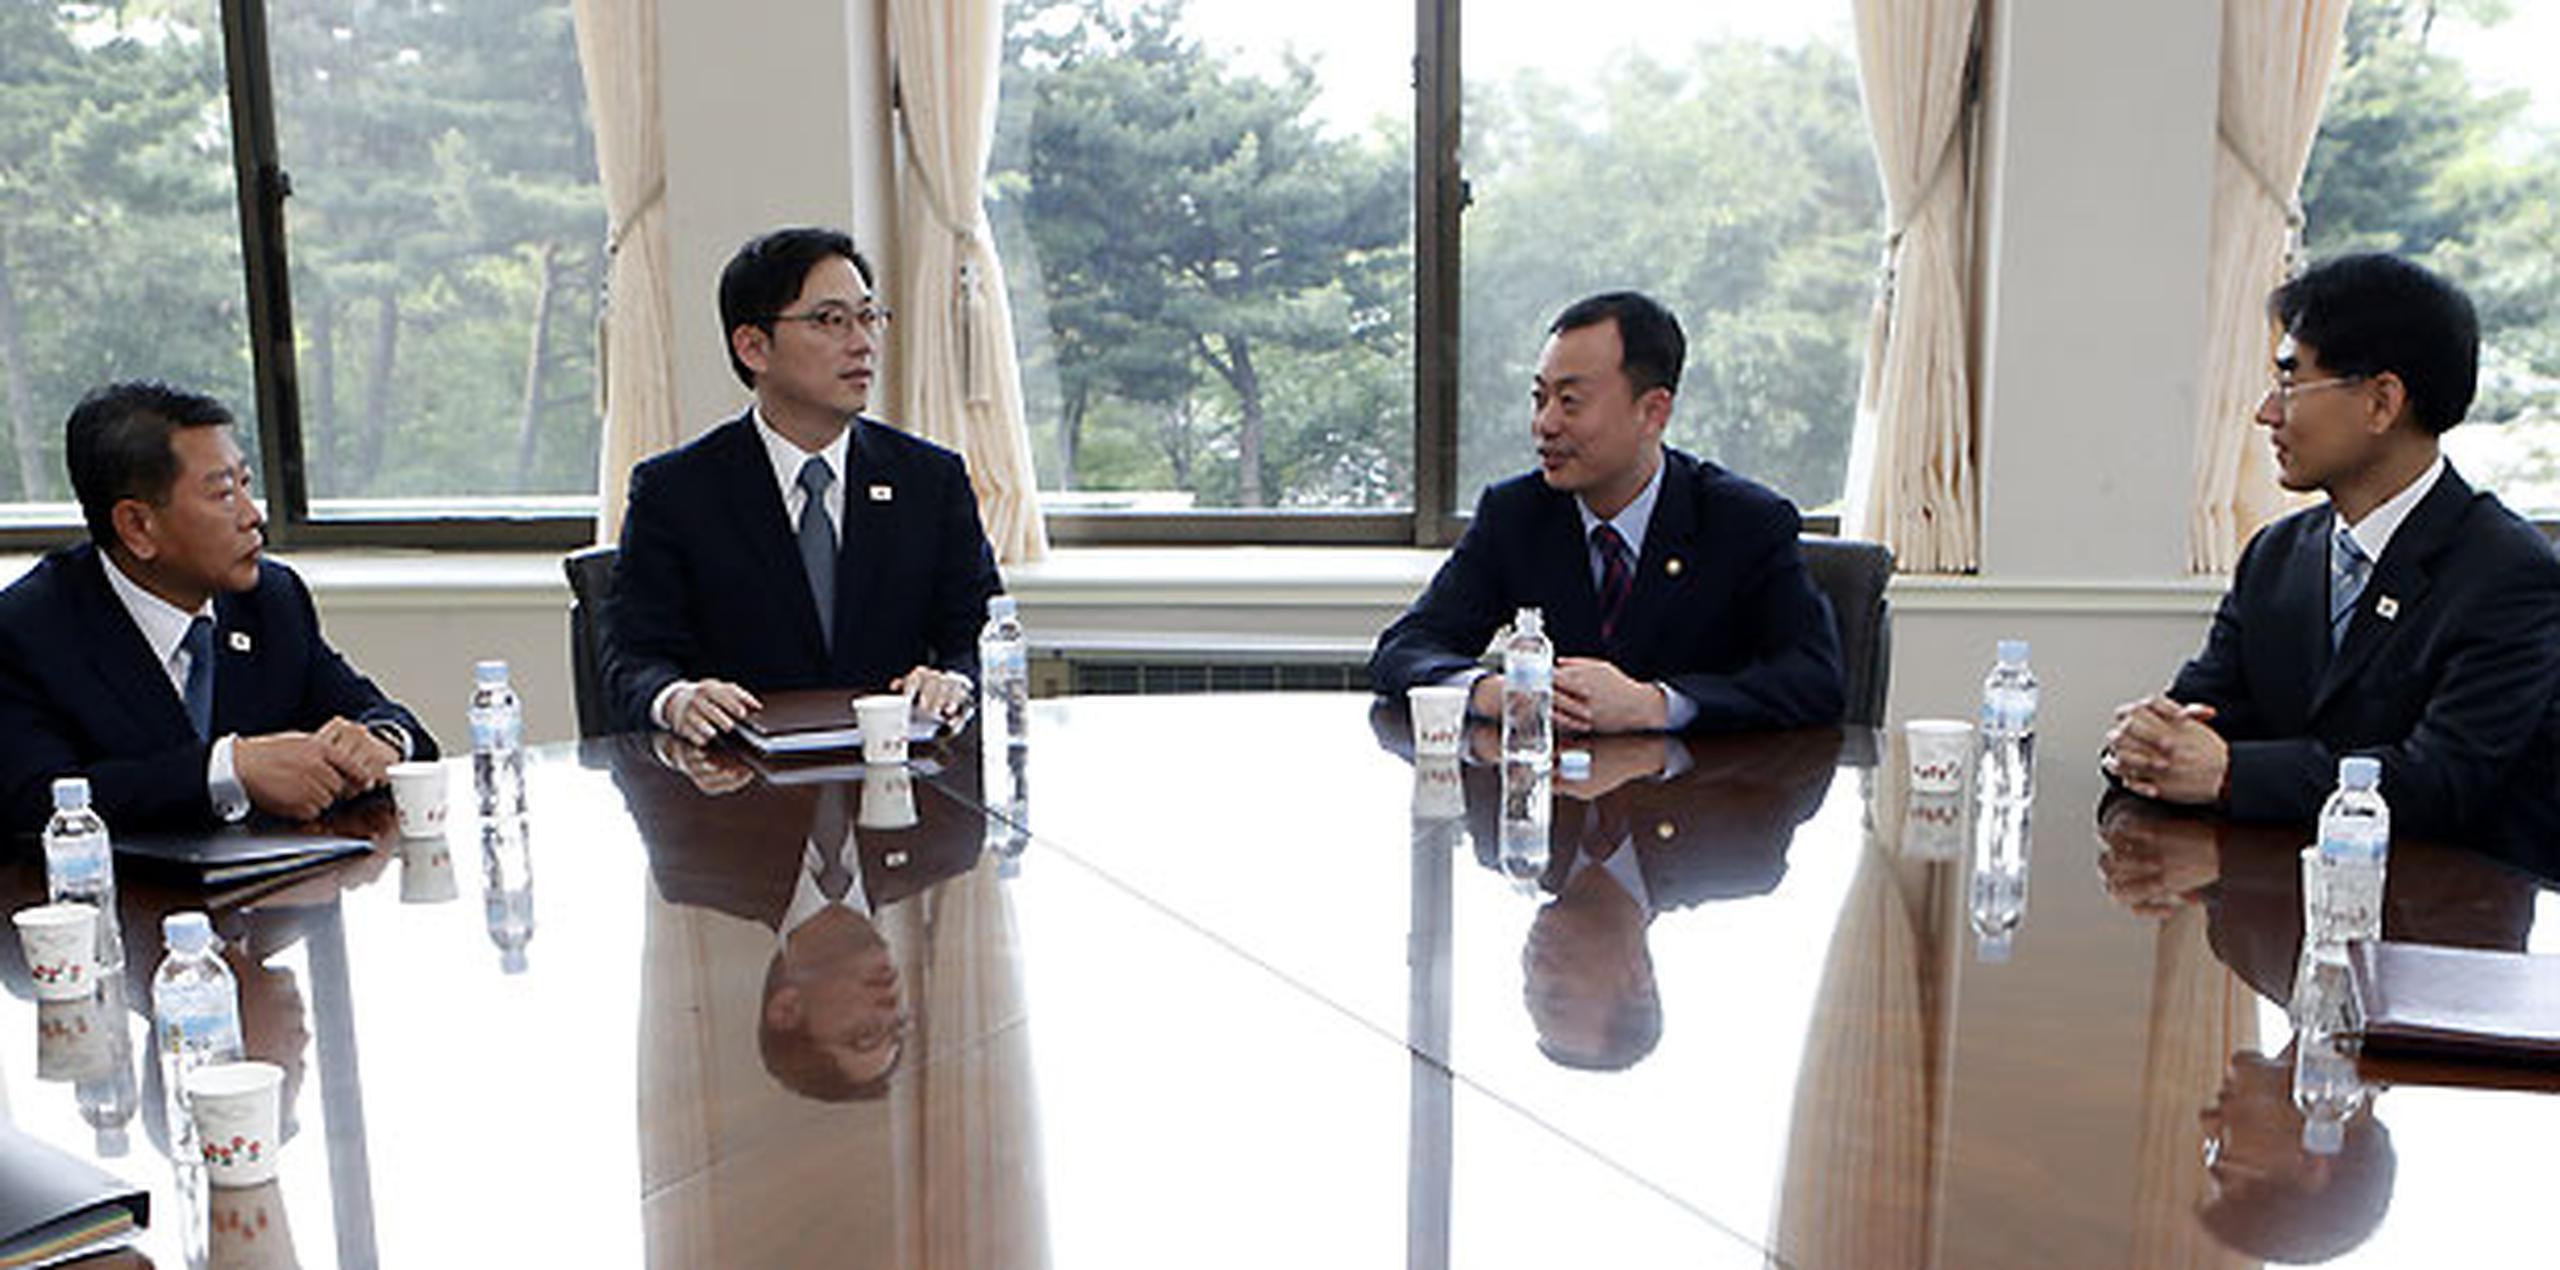 Se espera que las próximas negociaciones entre Norte y Sur se orienten a resolver los principales asuntos bilaterales pendientes. (AP / Lee Jae-Won)